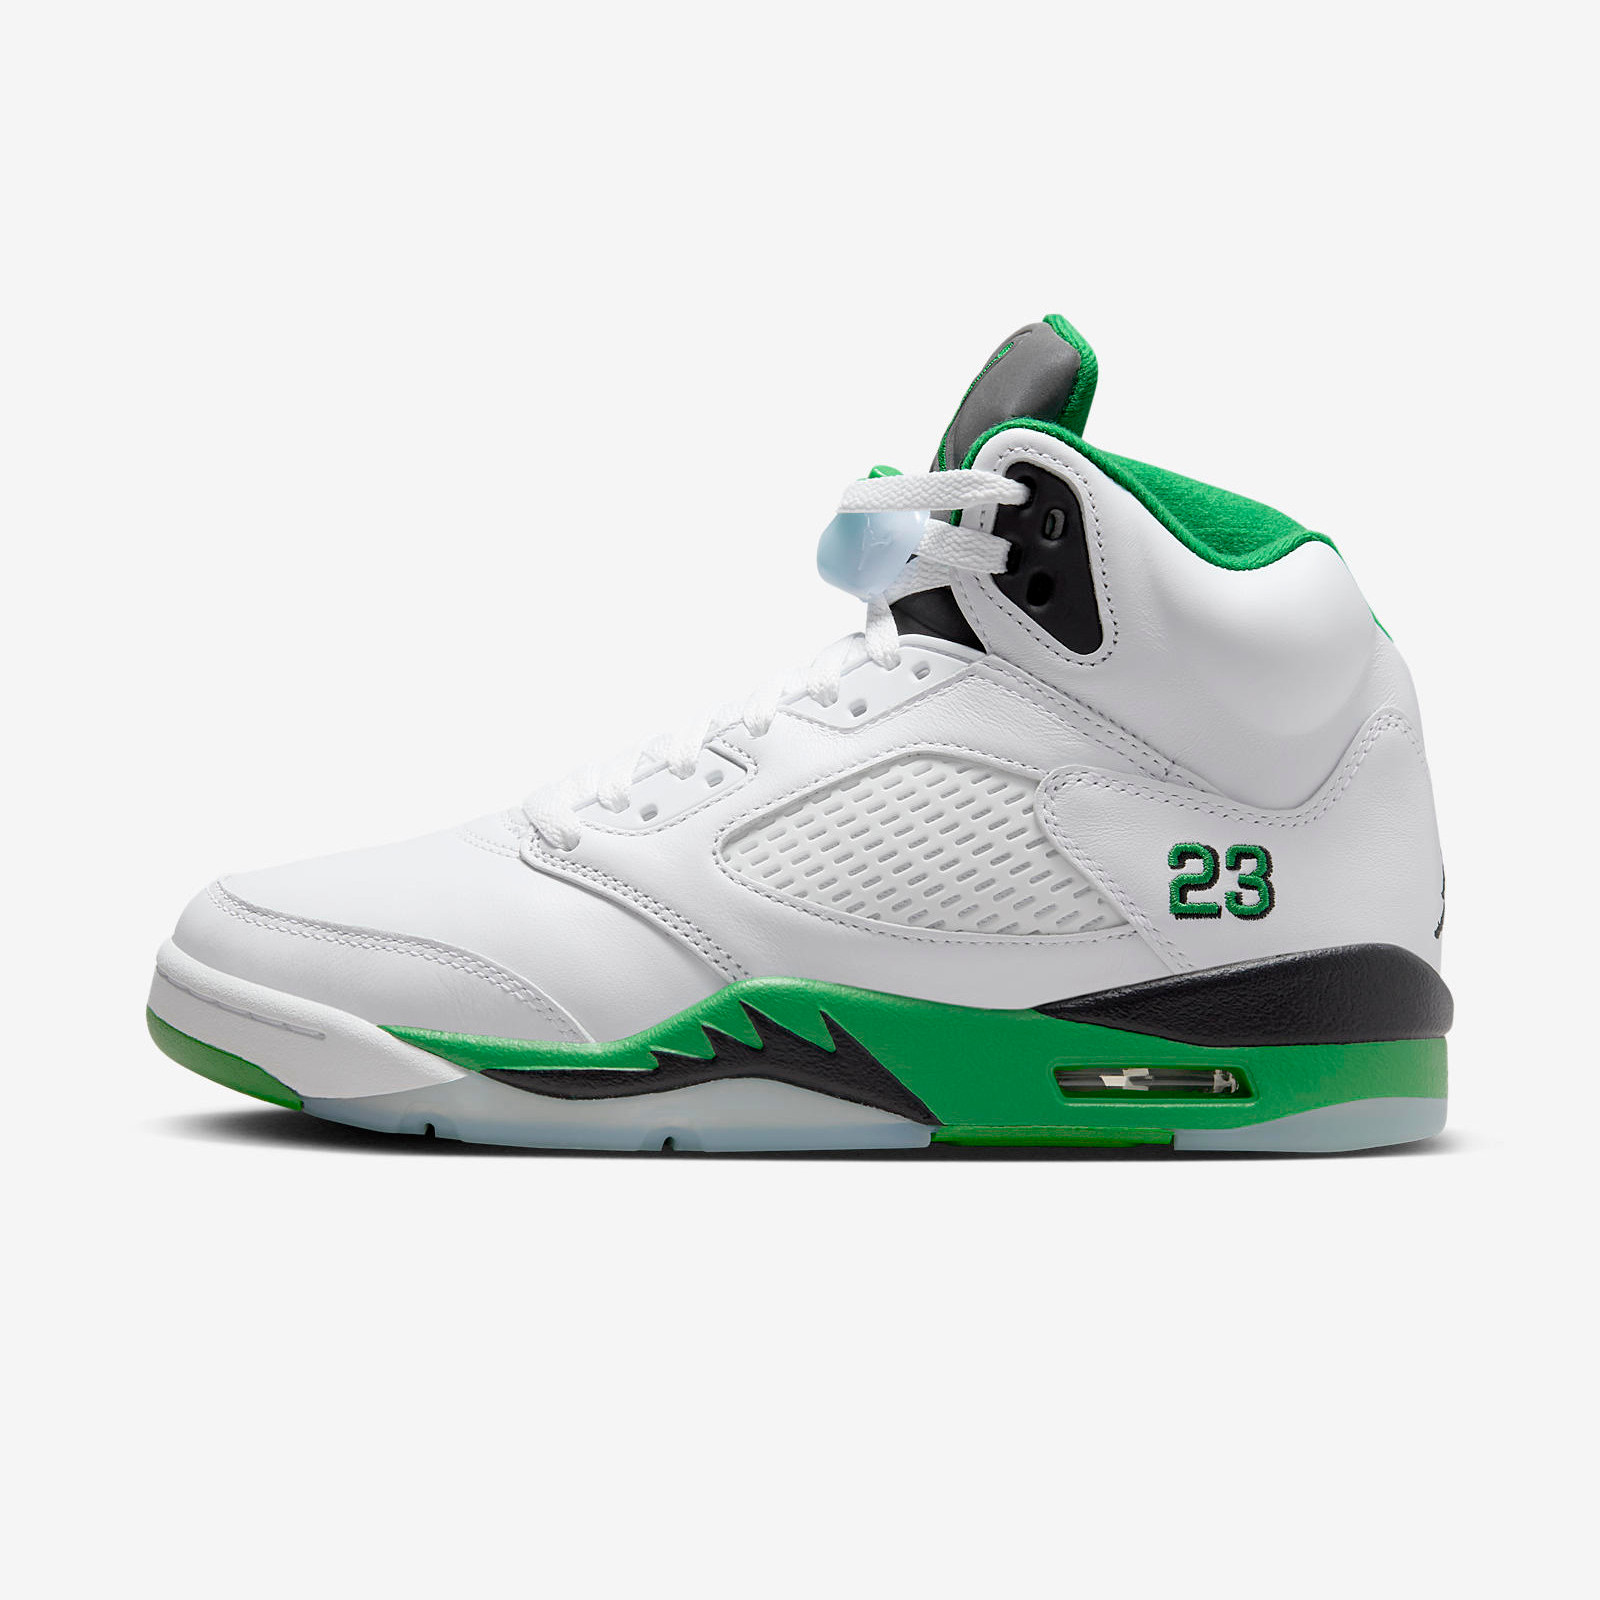 Air Jordan 5 Retro
« Lucky Green »